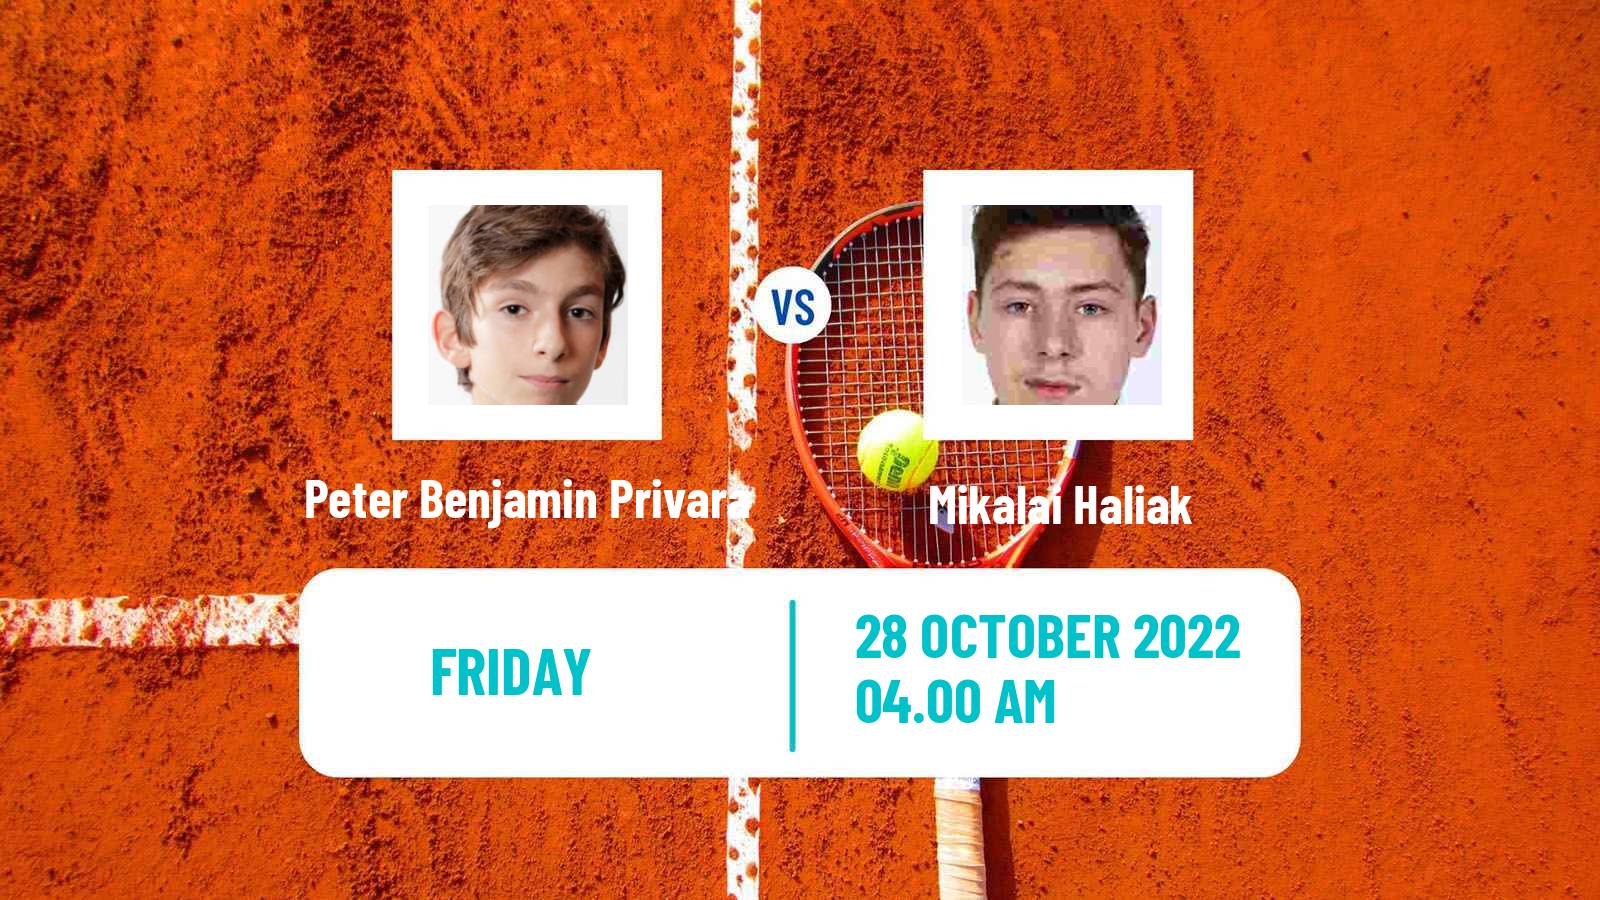 Tennis ITF Tournaments Peter Benjamin Privara - Mikalai Haliak